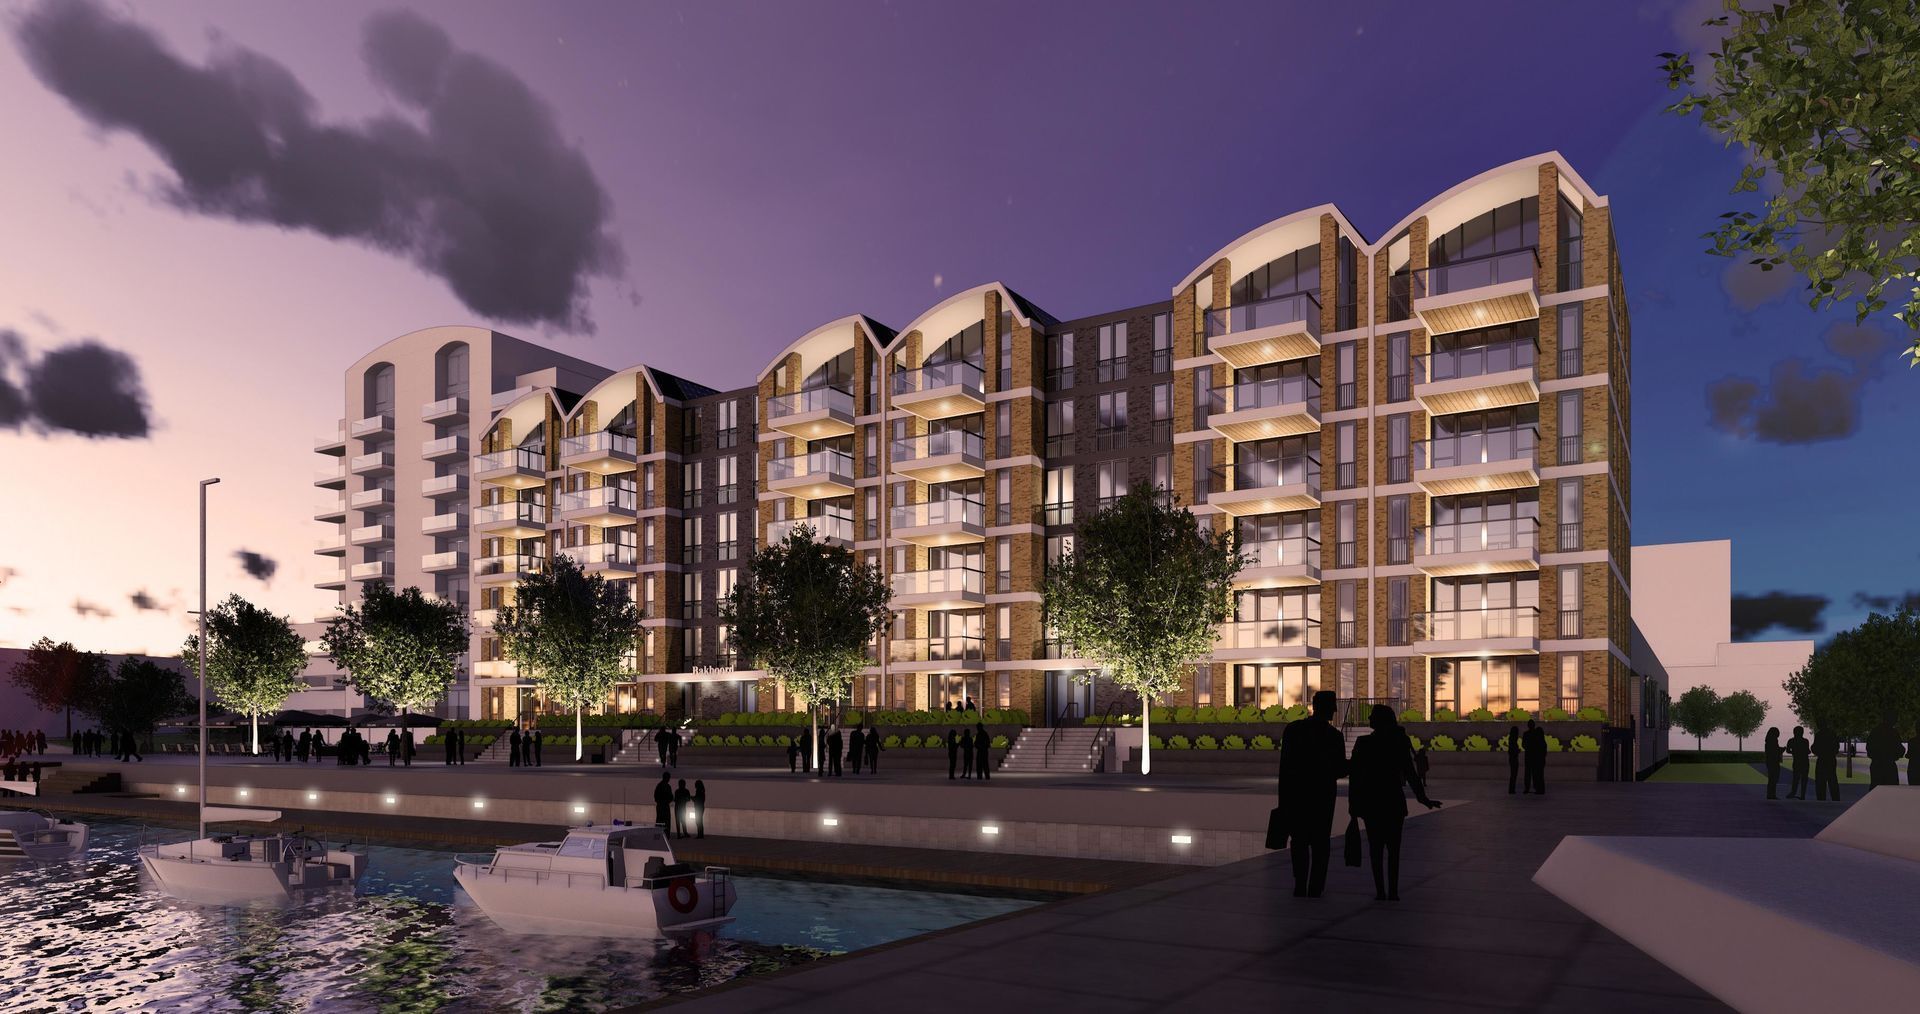 Binnenkort in verkoop: Het Havenhuys, 34 luxe appartementen in Alphen aan den Rijn.